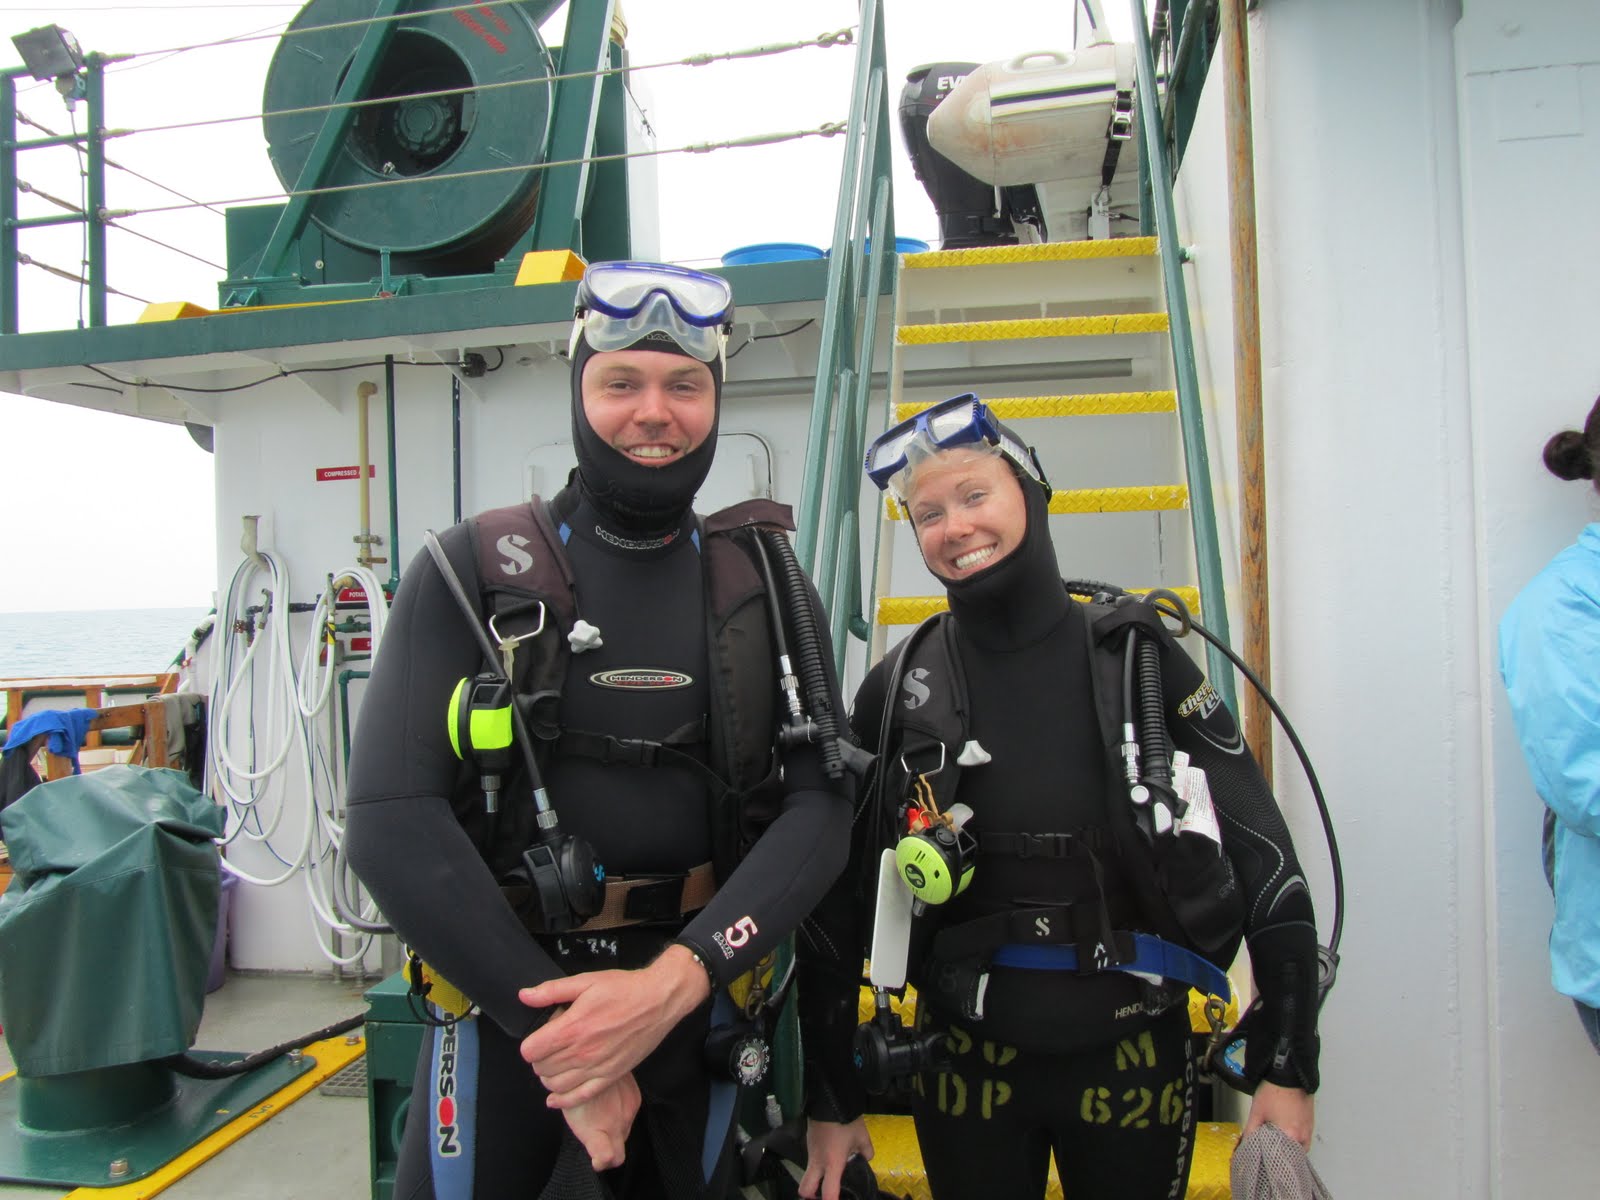 Brendan and Anna in dive gear pre-dive